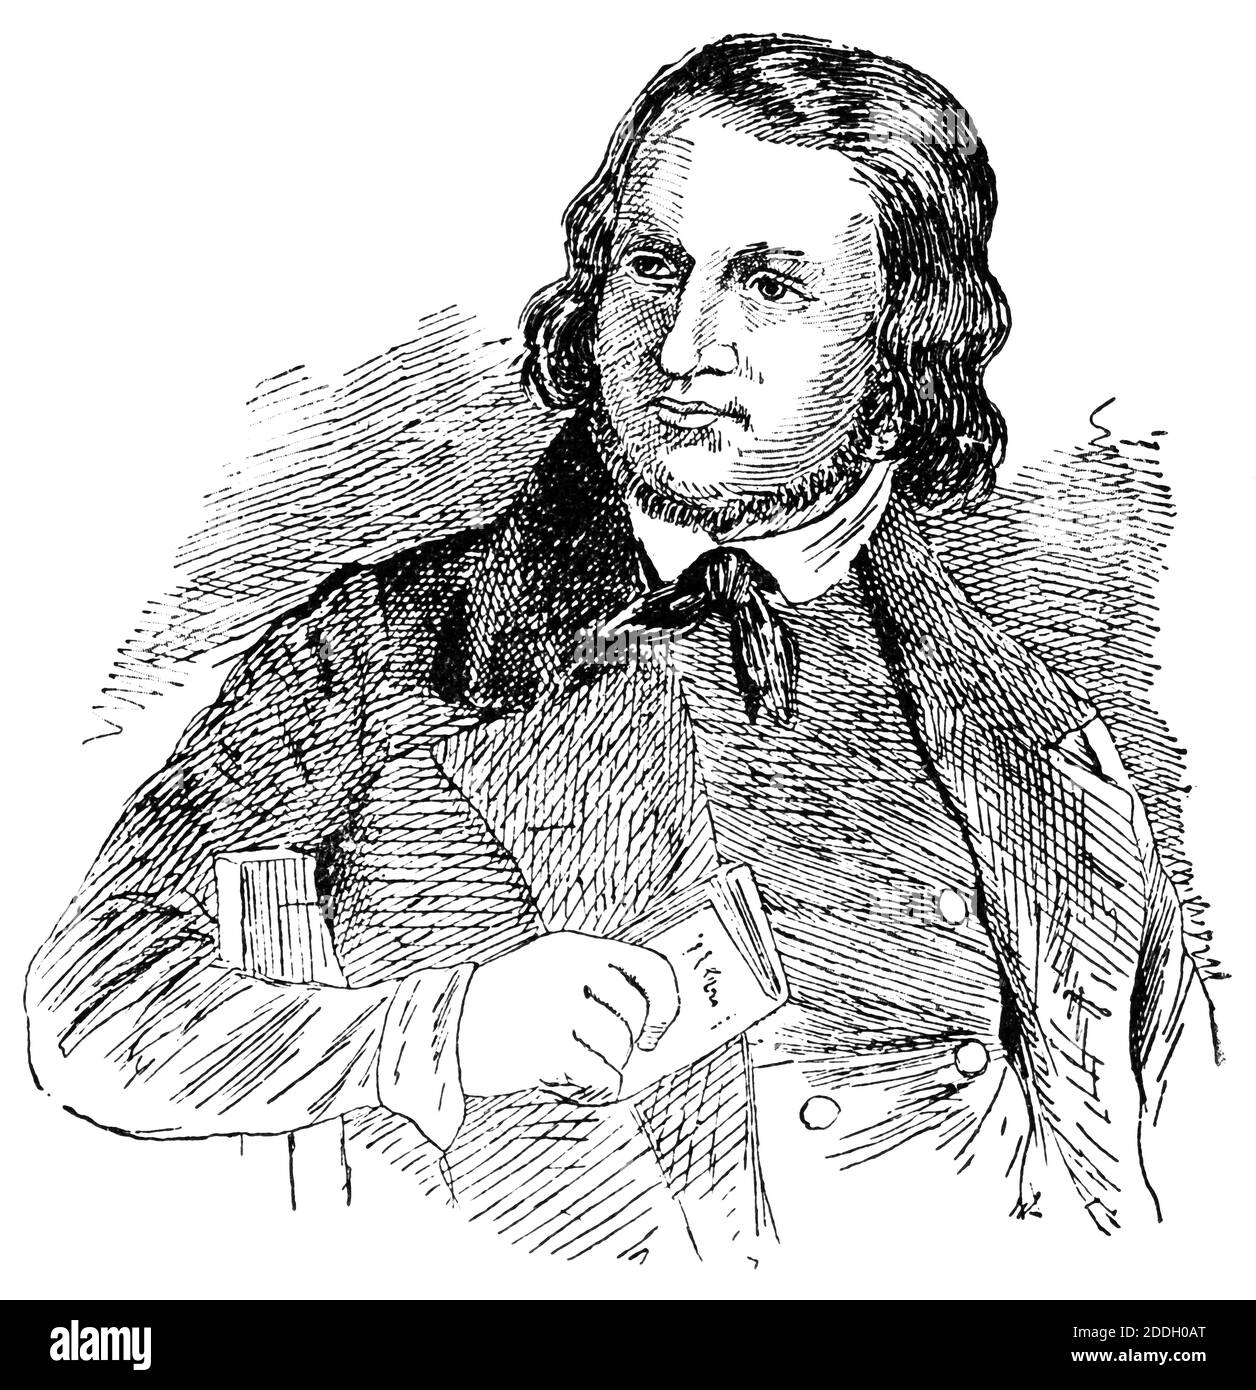 Portrait of August Heinrich Hoffmann von Fallersleben - a German poet. Illustration of the 19th century. White background. Stock Photo